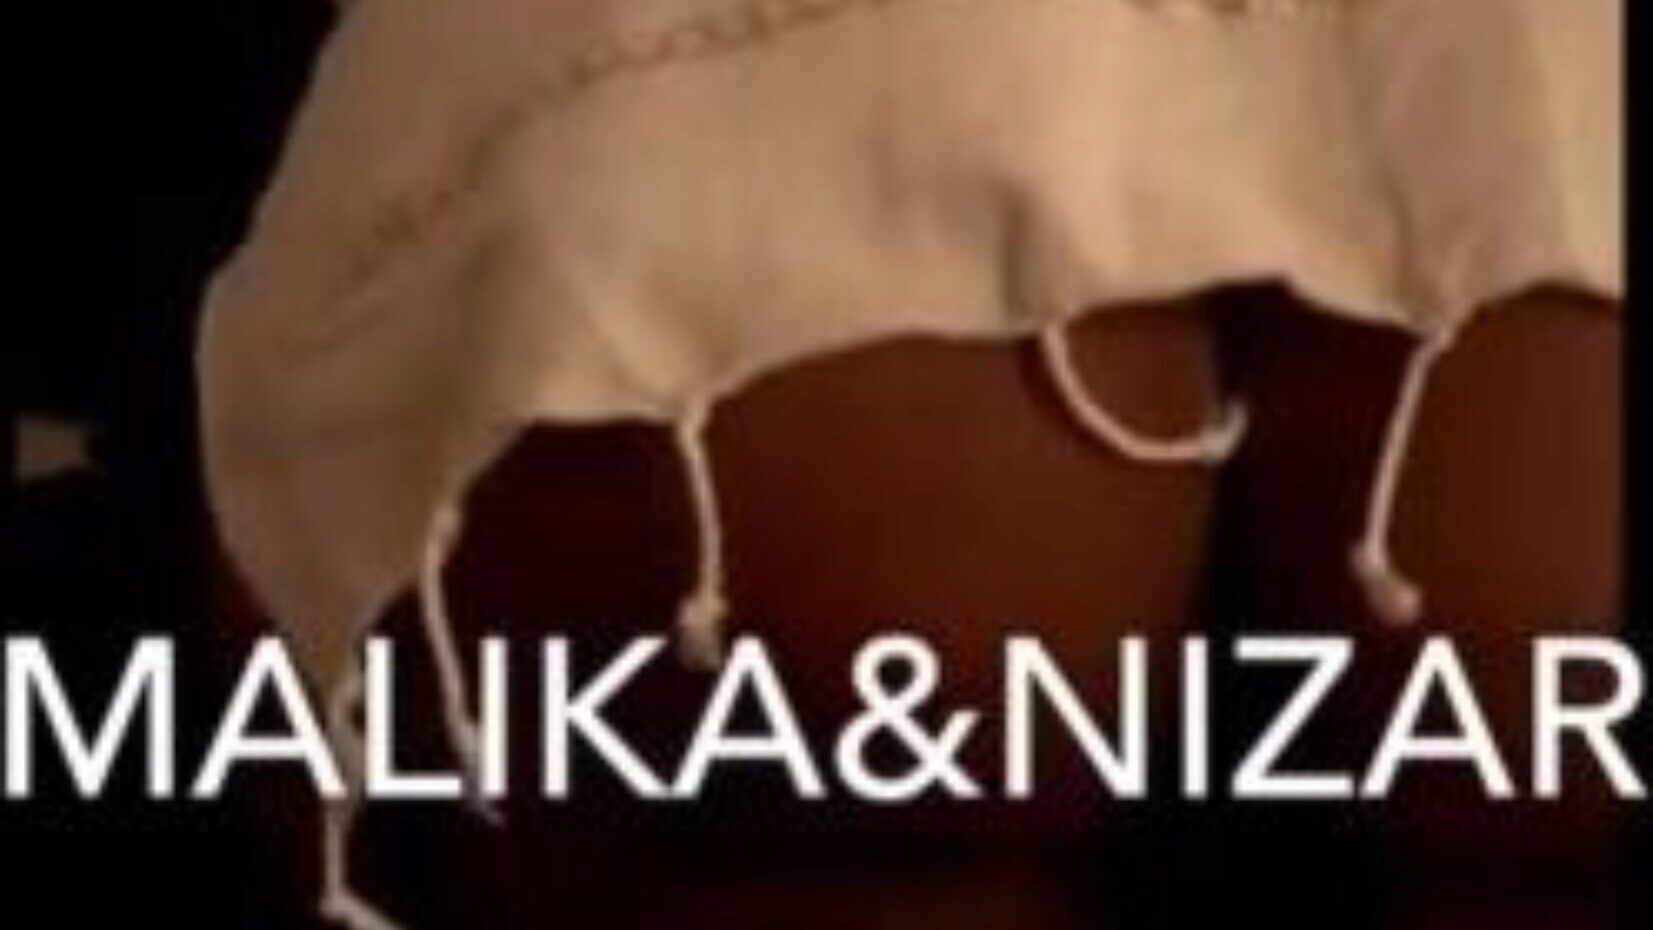 Malika i Nizar: darmowe seksowne, hardkorowe filmy porno d3 - xhamster oglądaj odcinek orgii Maliki i Nizara za darmo na xHamster